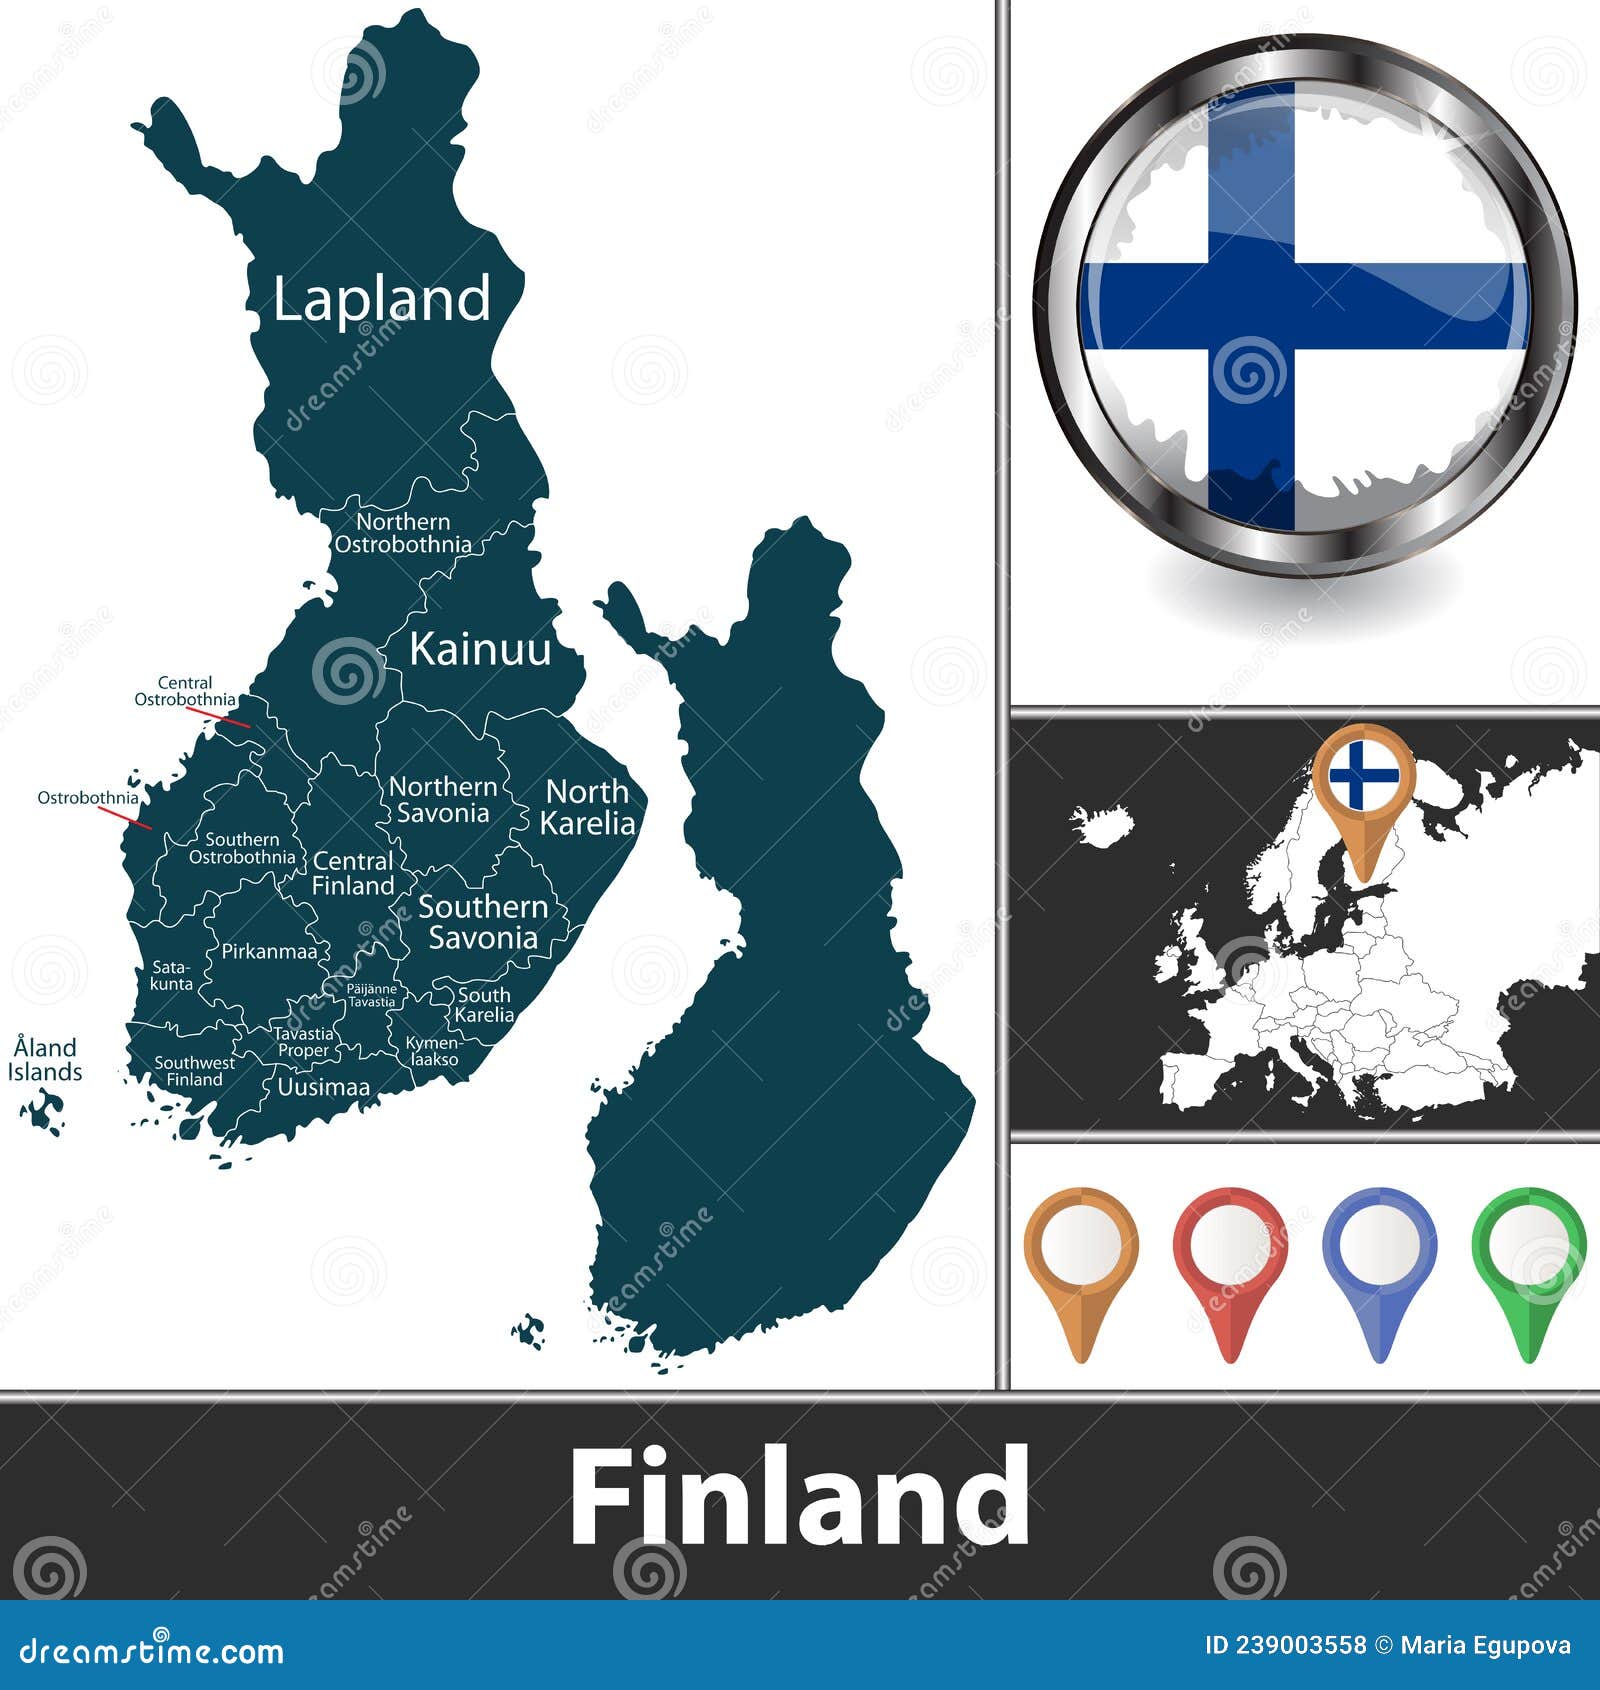 Фінляндія на три тижні оголосила локдаун